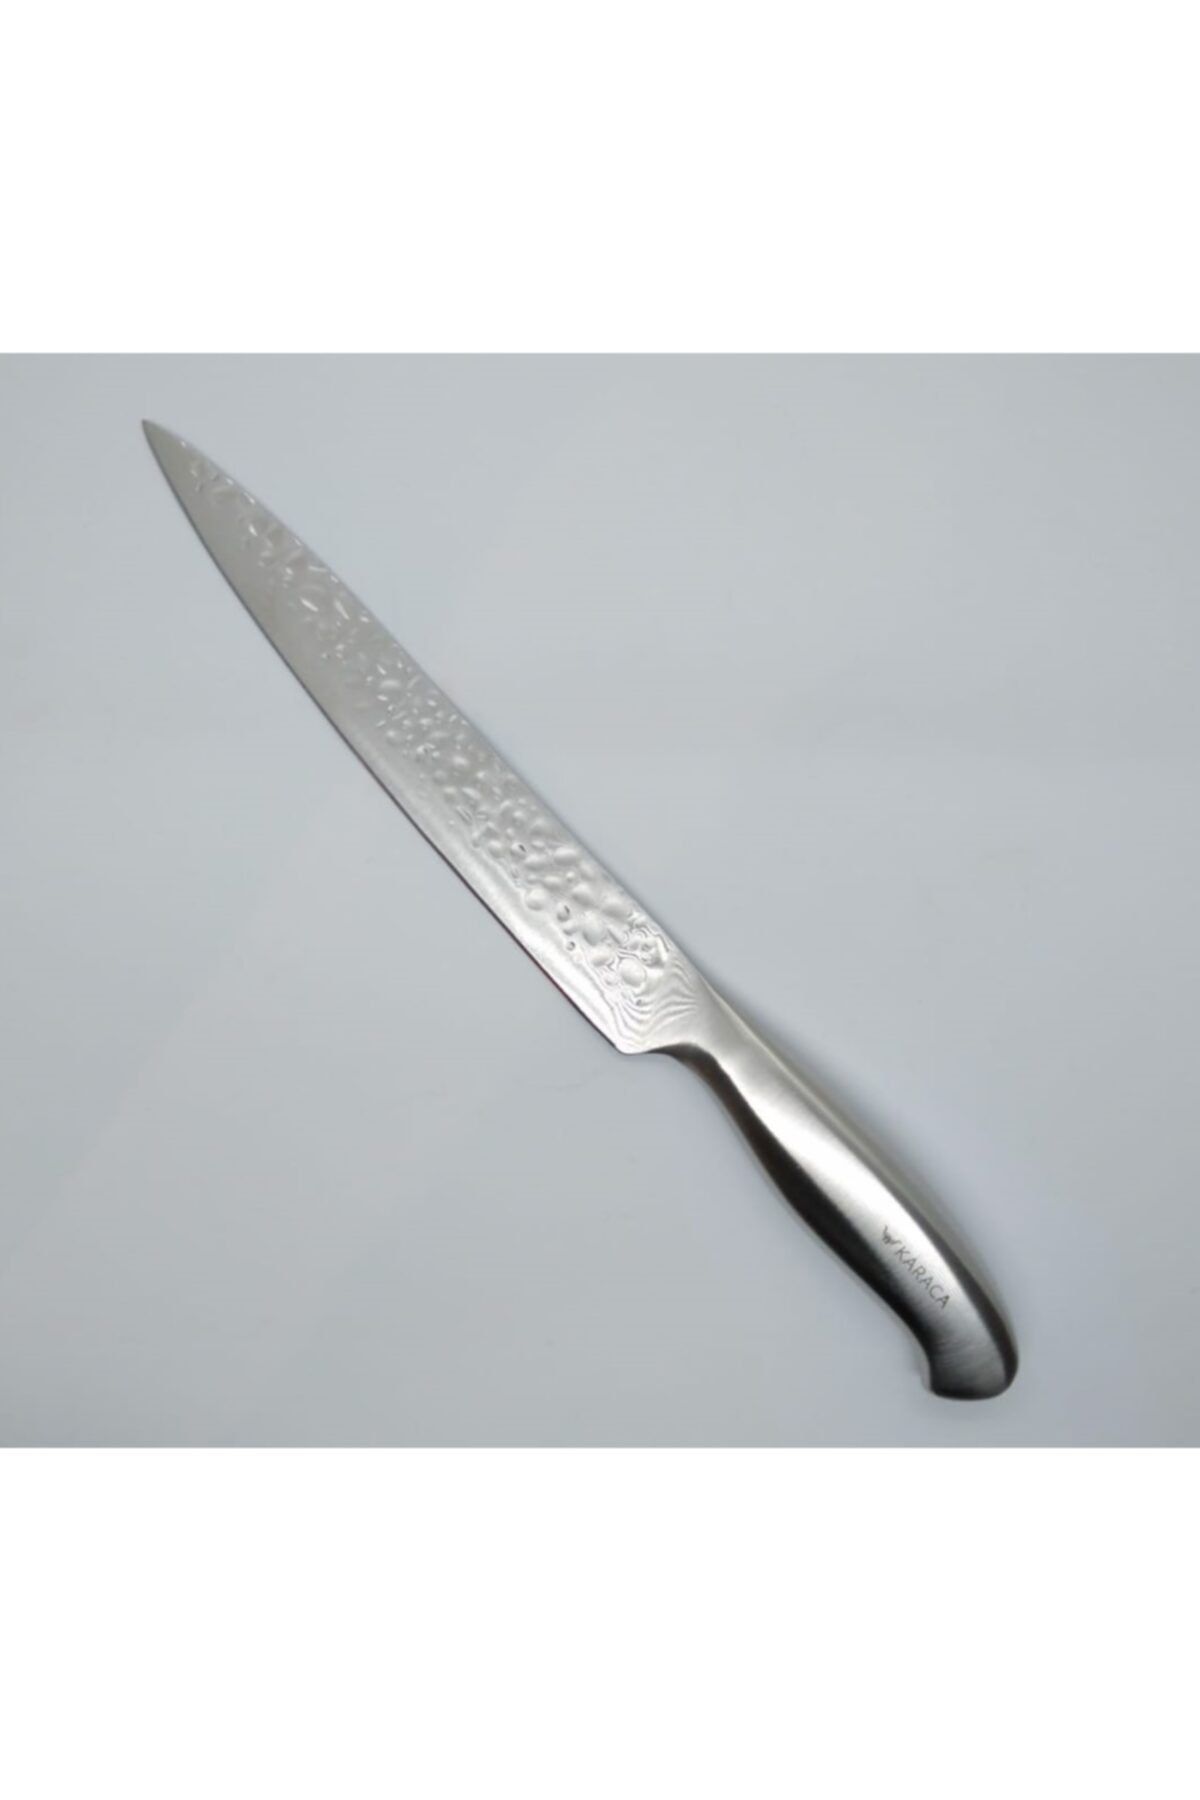 Karaca Crystal 20 Cm Dilimleme Bıçağı